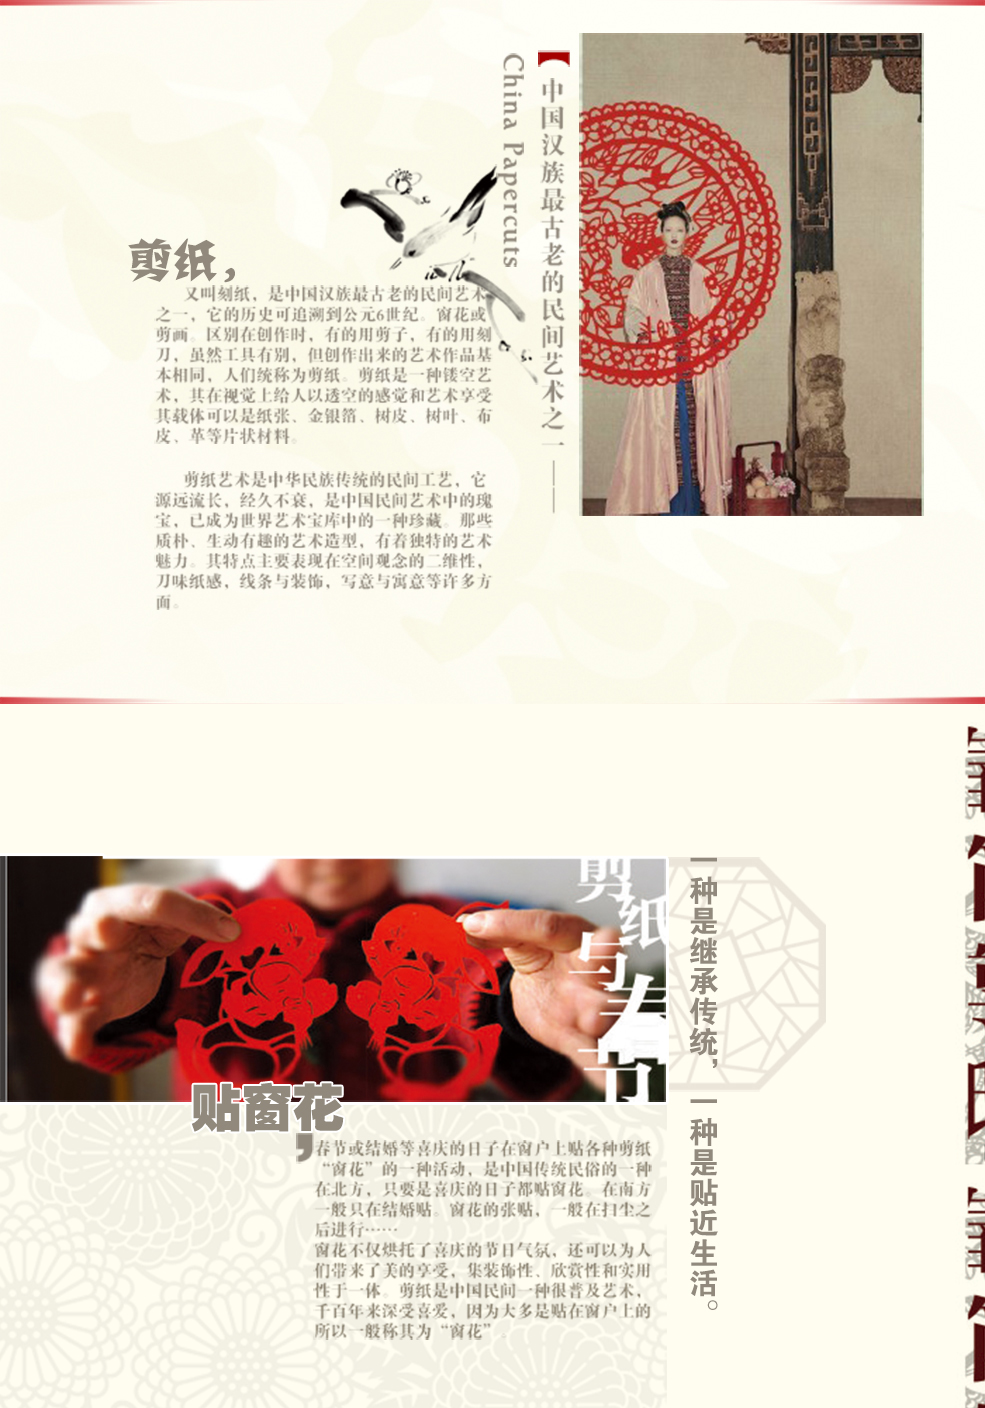 
                                        
                                                            【大尺寸单张装】 彩色剪纸 窗花玻璃贴 中国特色年画 传统民俗手工艺送礼品 熊猫竹梅 25厘米规格                